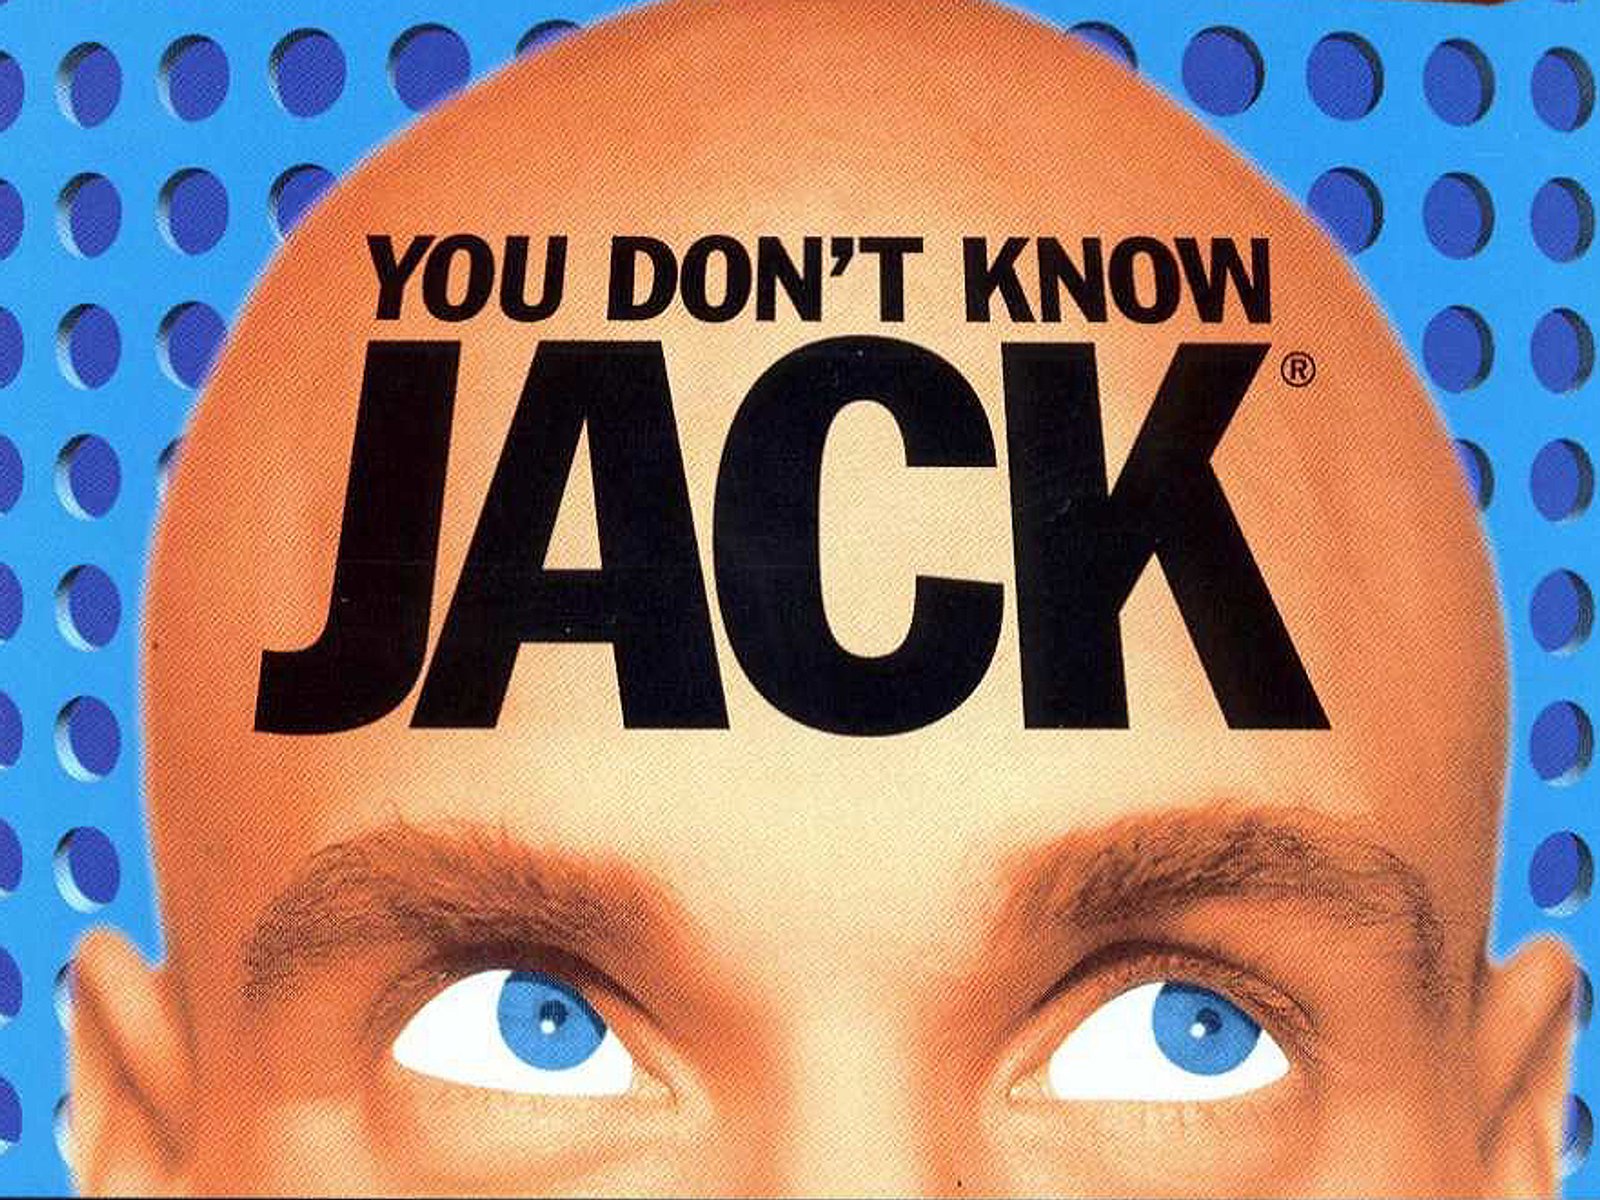 Didn't know Jack. You don t know. You don't know Jack 2015. You don't know Jack (2011 Video game). You don t know на русском